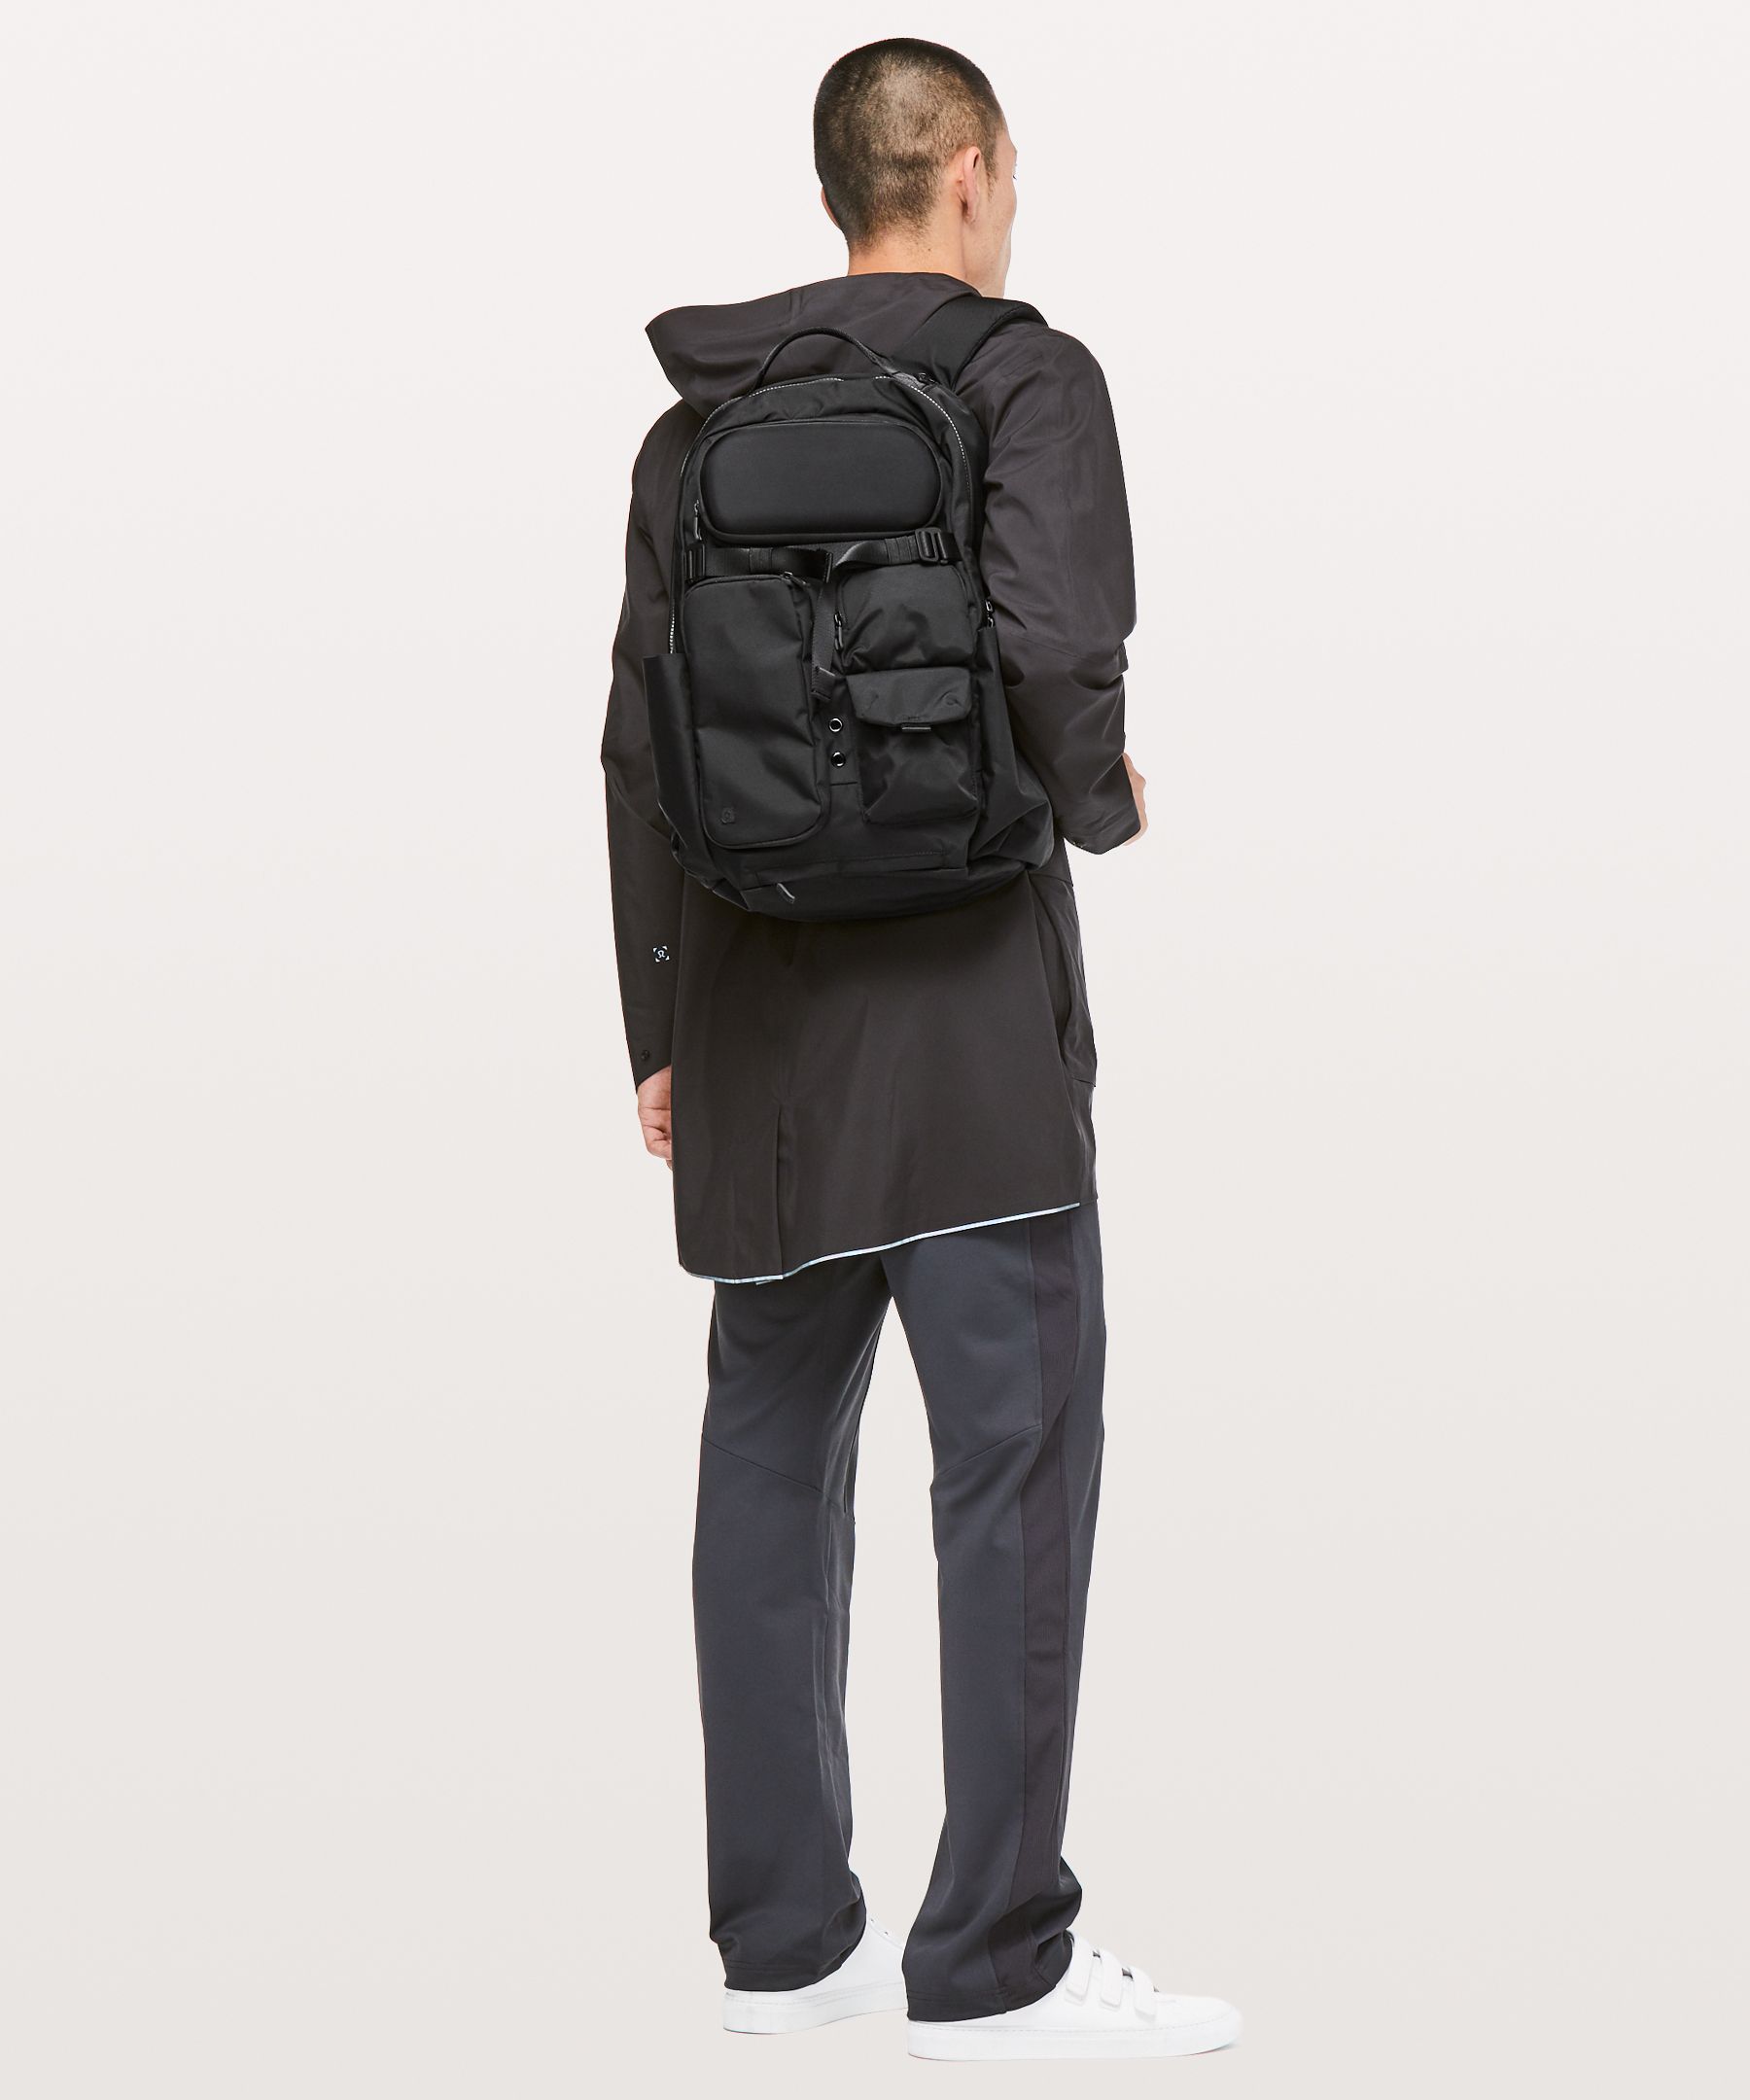 lululemon cruiser backpack